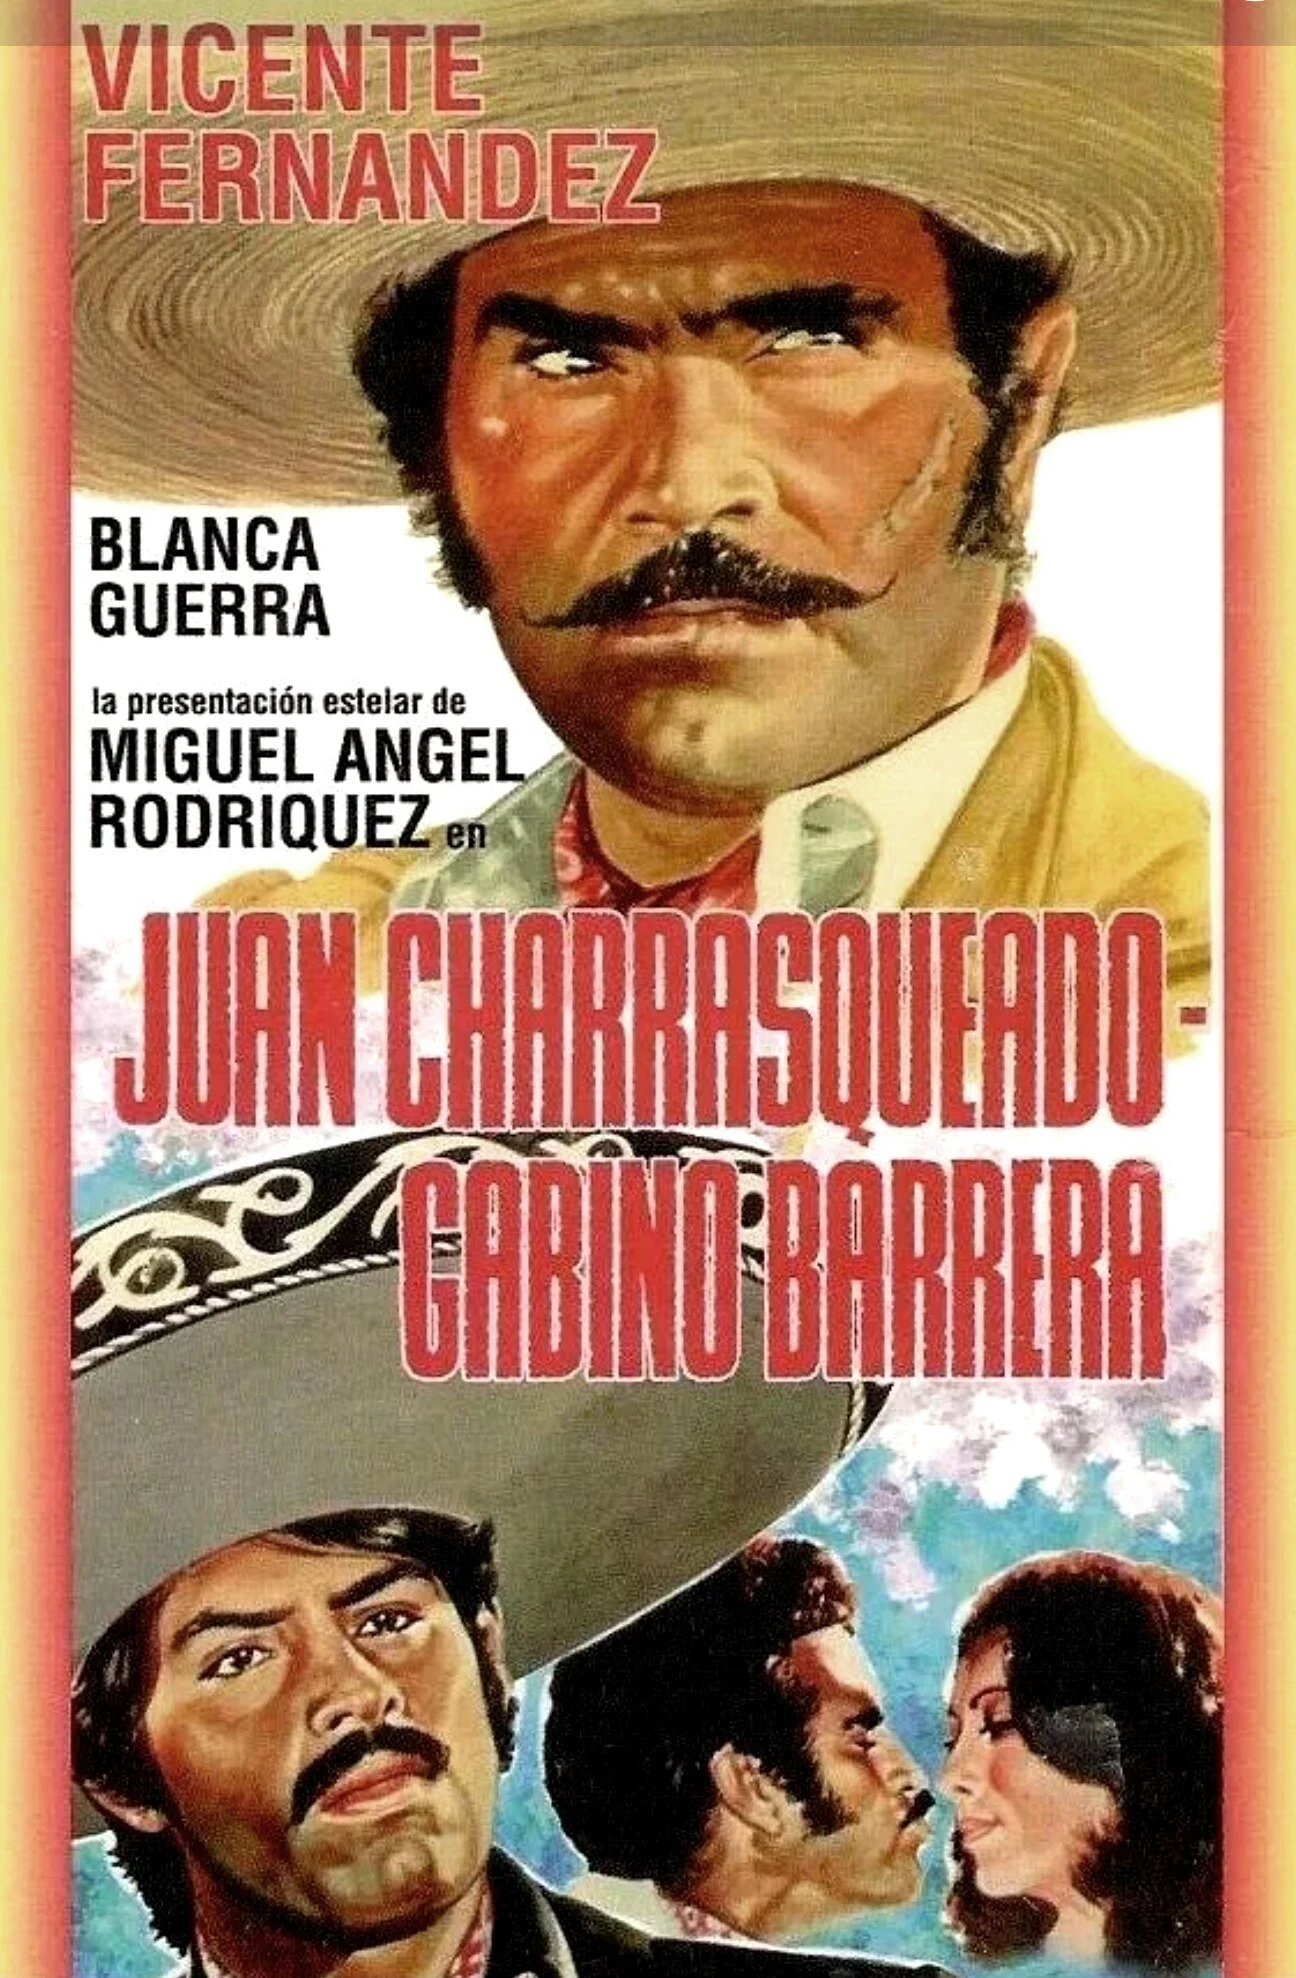 Juan Charrasqueado Y Gabino Barrera Su Verdadera Historia 1982 Cine Com Vicente fernandez peliculas completas gratis. juan charrasqueado y gabino barrera su